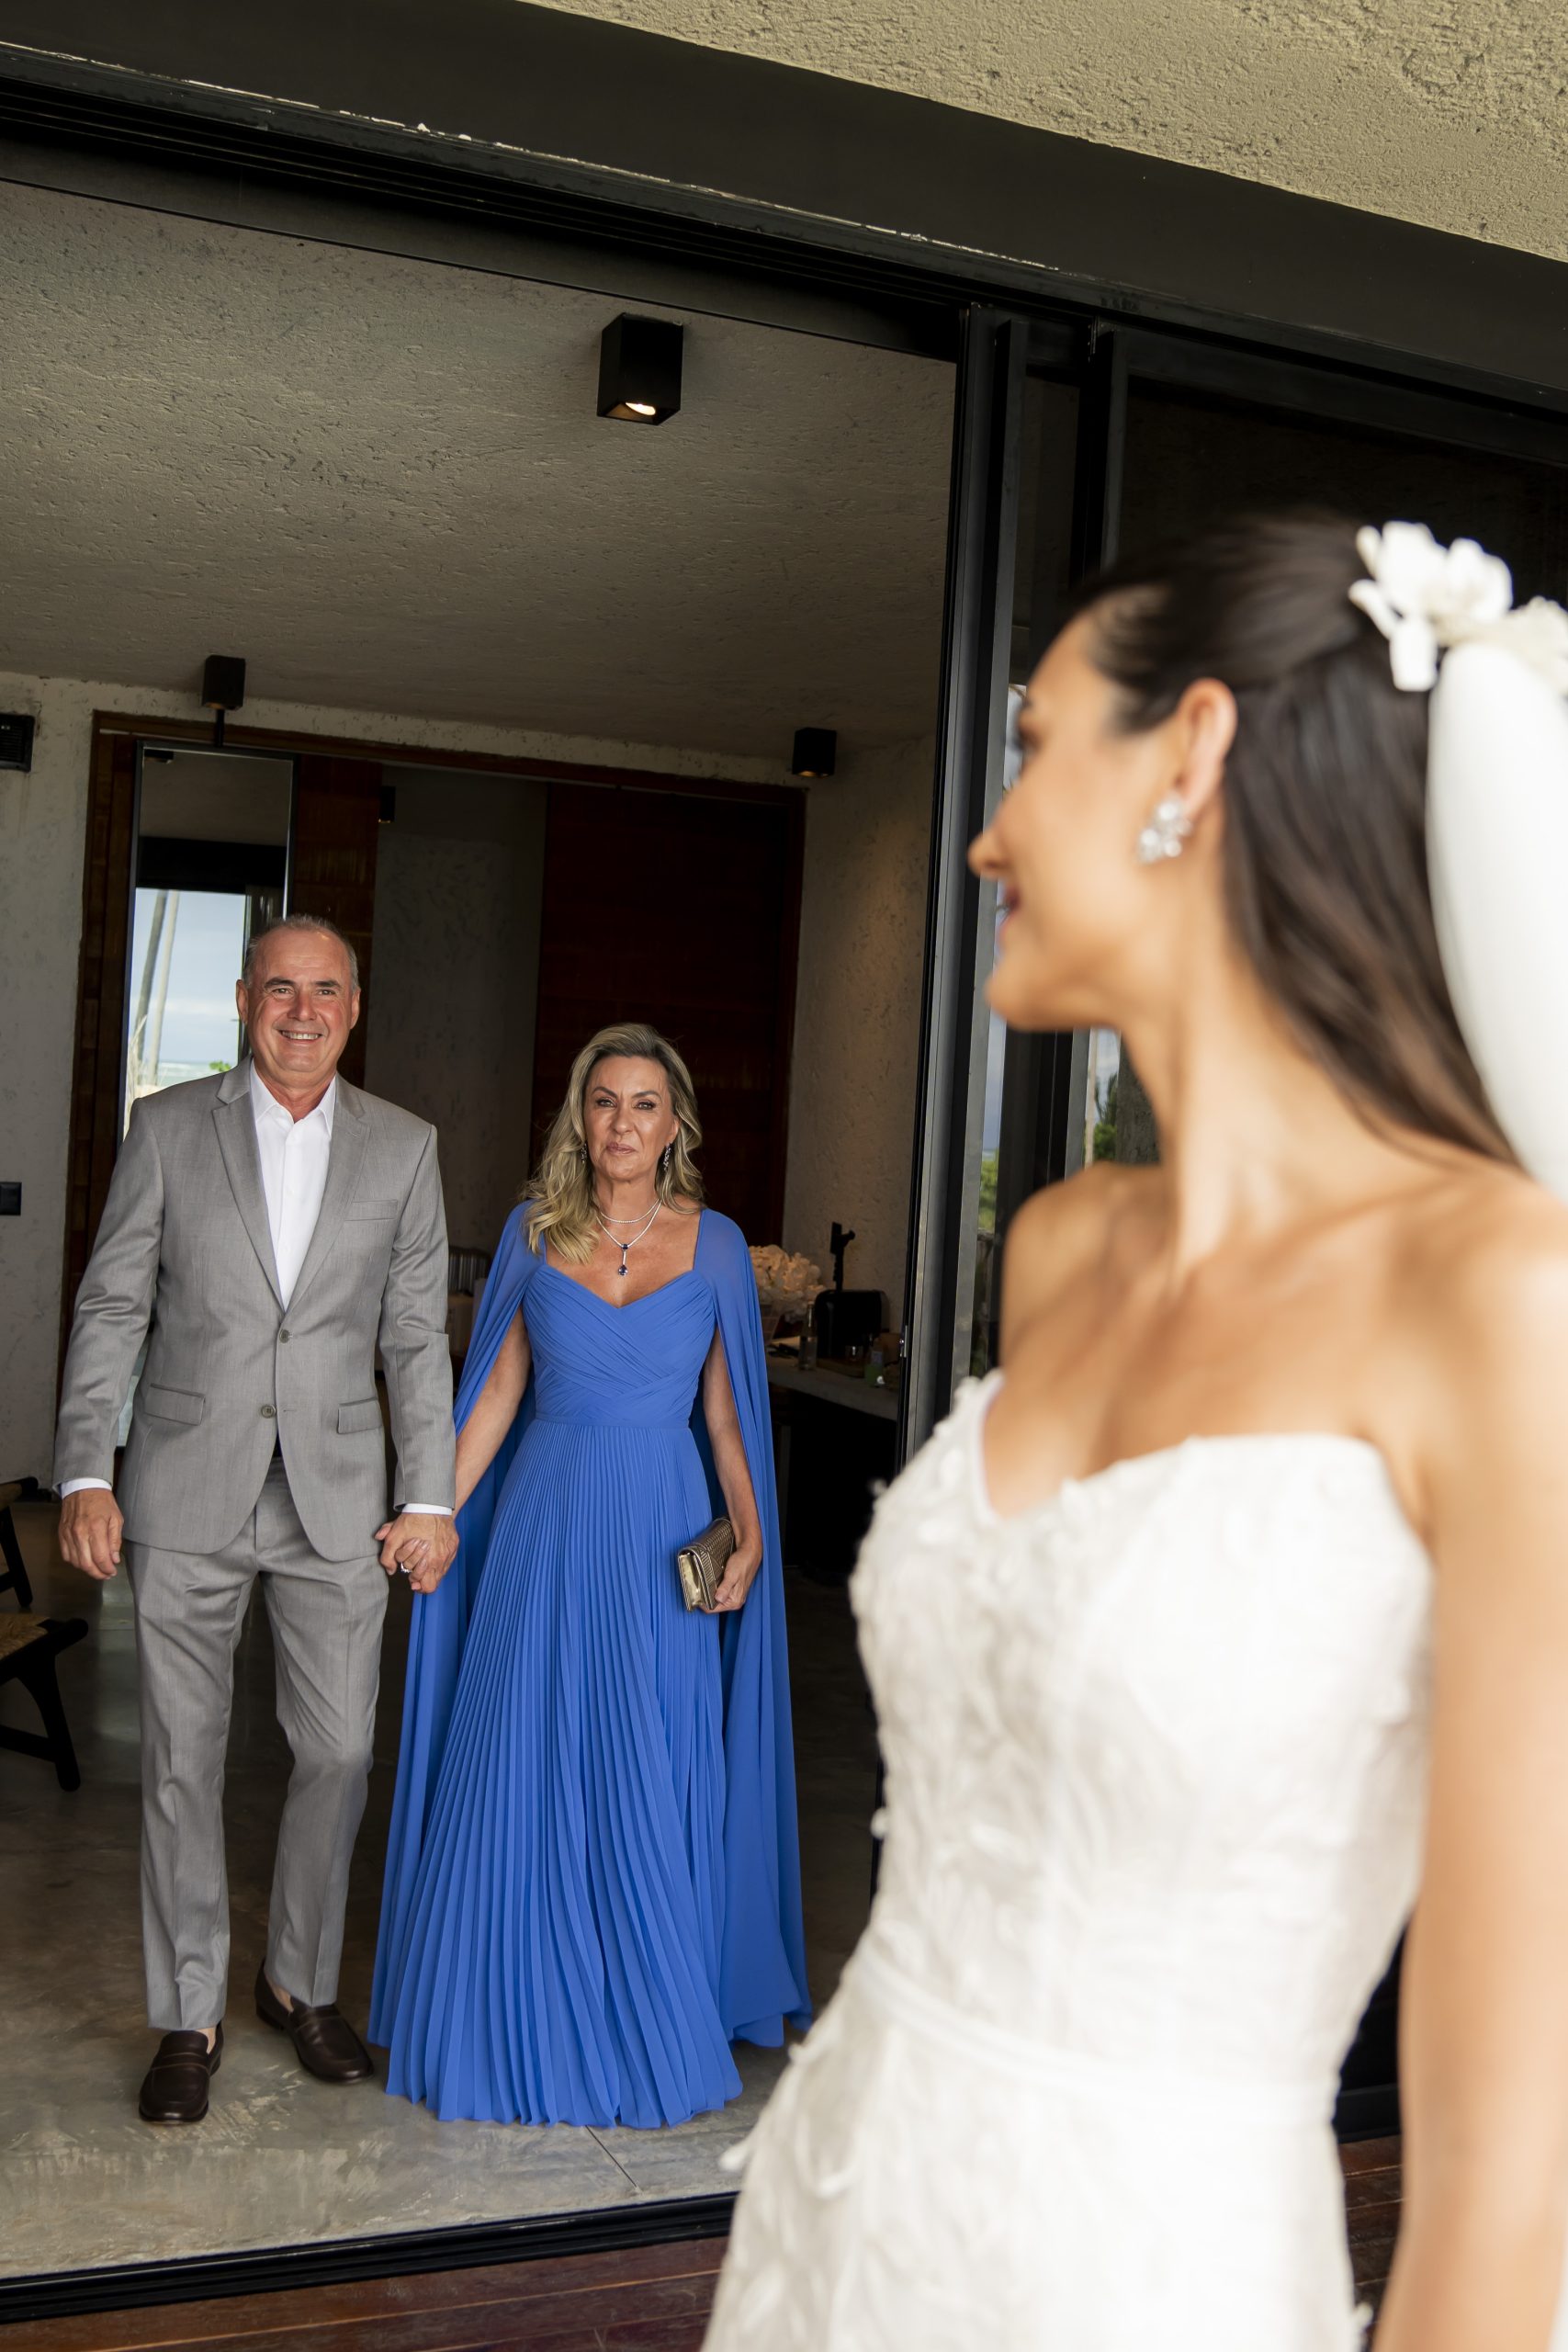 Reação dos pais ao ver a filha vestida de noiva | Foto Rodolfo Santos